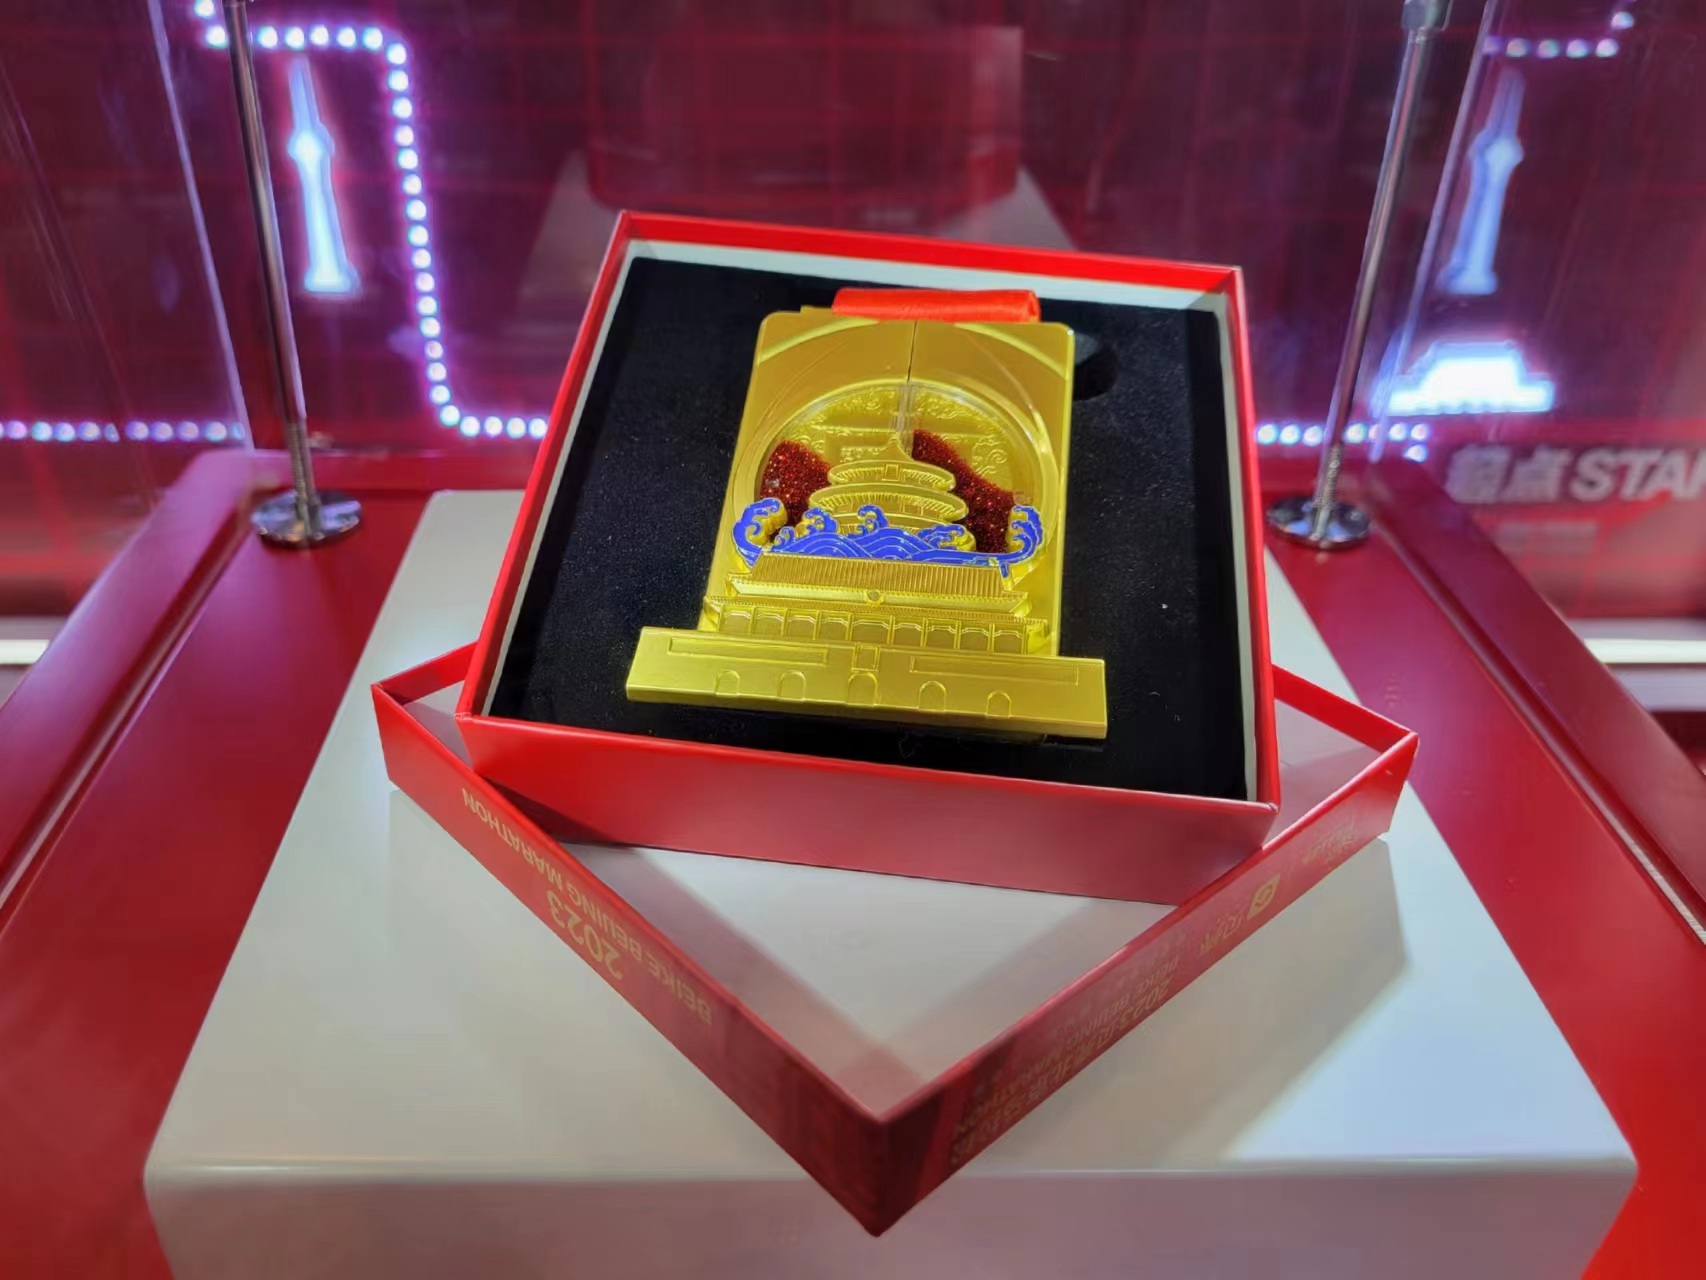 Το φετινό μετάλλιο στην Έκθεση για τον Μαραθώνιο του Πεκίνου 2023 στο Εθνικό Εκθεσιακό Κέντρο του Ολυμπιακού Πάρκου στο Πεκίνο (Φωτογραφία Εύα Παπαζή/ CRI Greek)